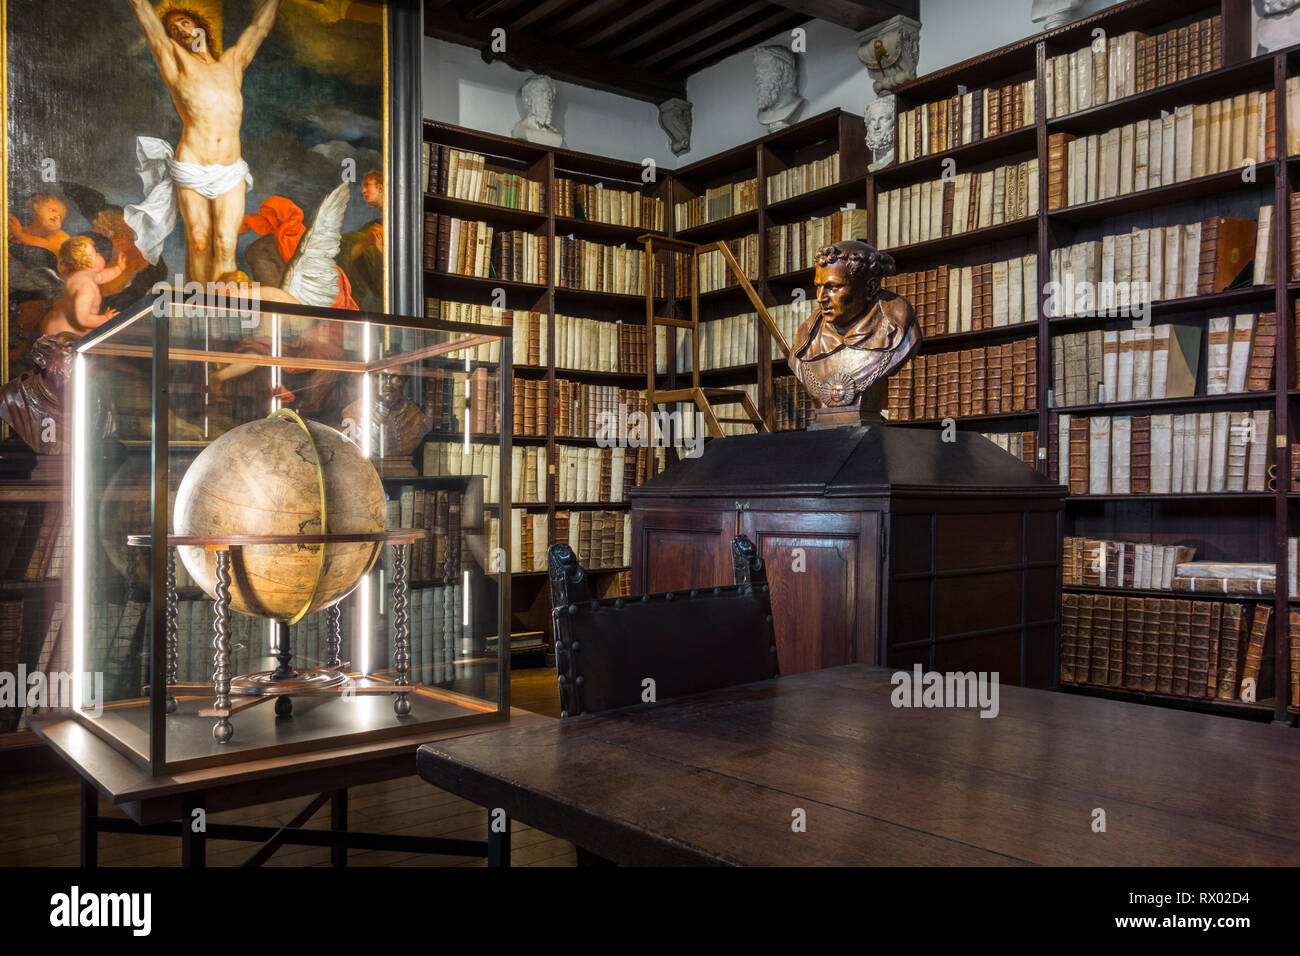 Estanterías con libros antiguos en el siglo XVII, de una gran biblioteca en el Museo Plantin-Moretus / Plantin-Moretusmuseum, Amberes, Flandes, Bélgica Foto de stock